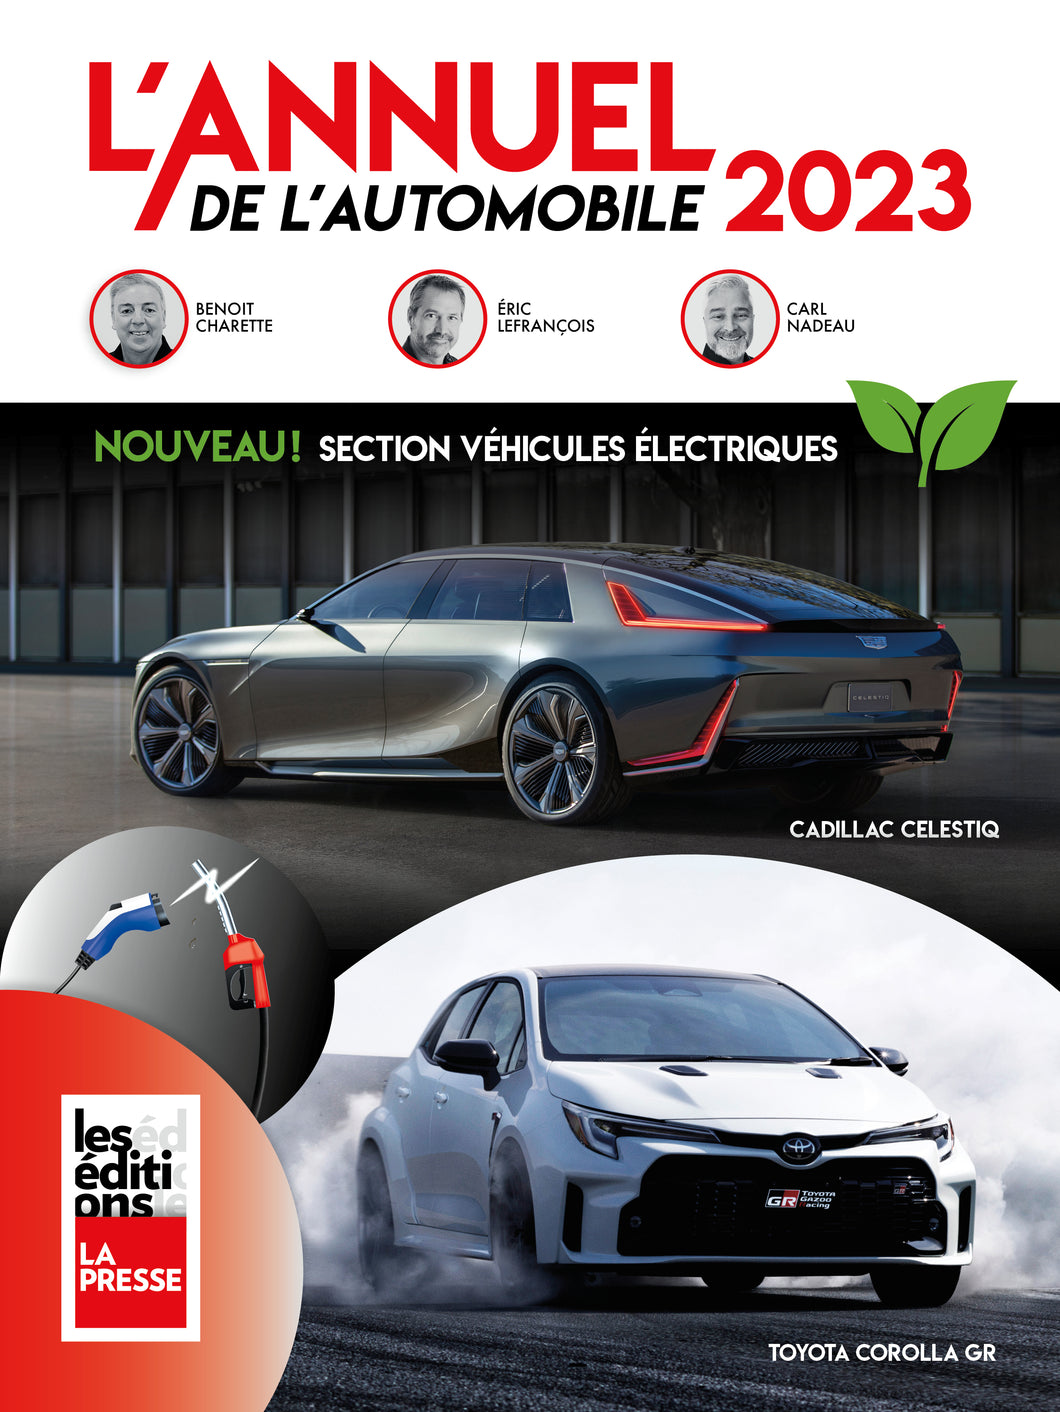 L'Annuel de l'automobile 2023